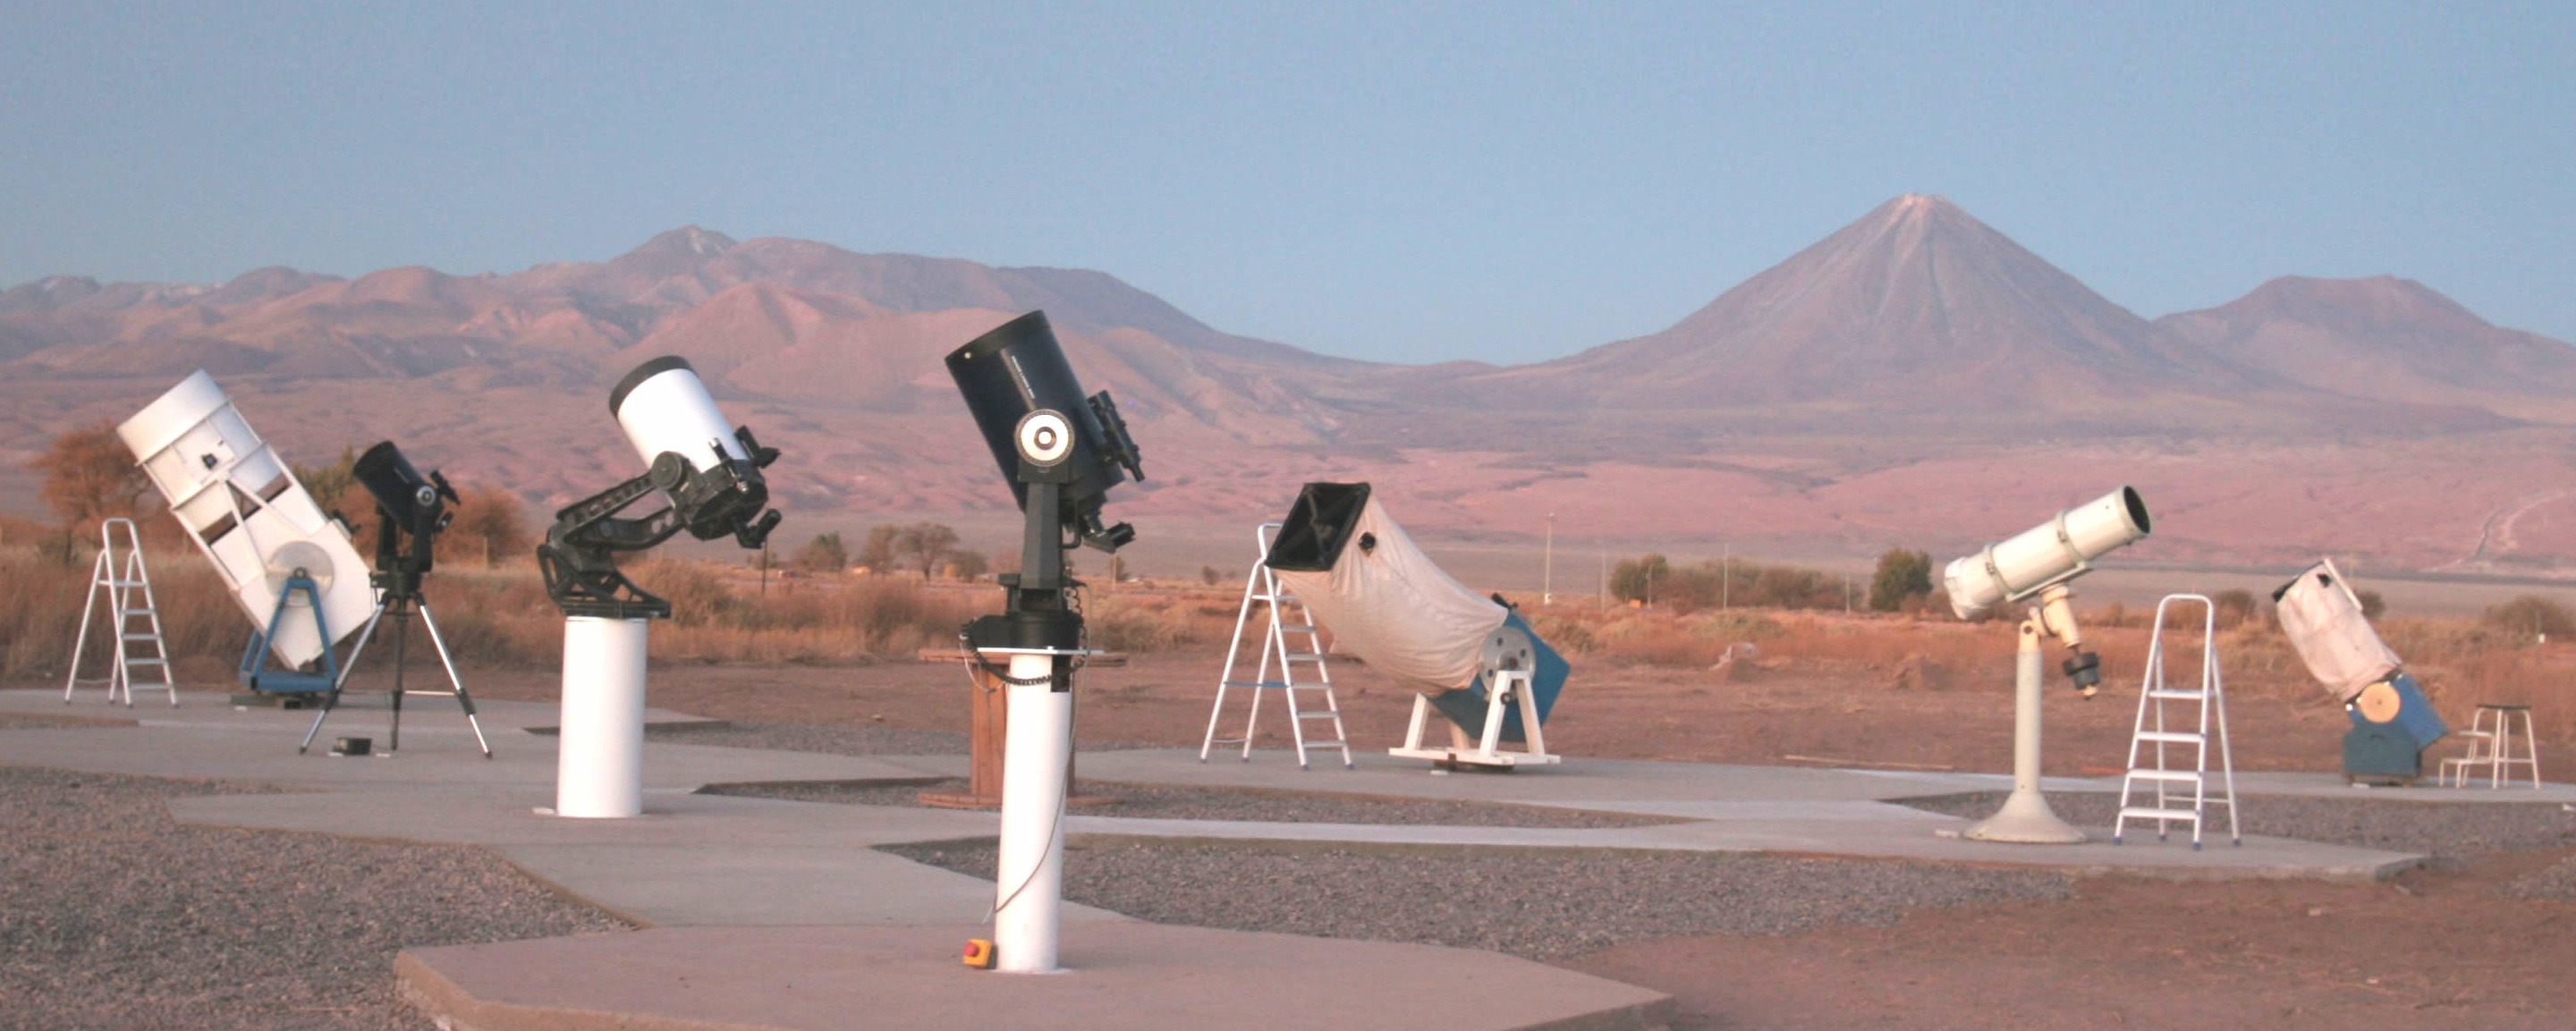 Sternwarte Space Obs bei San Pedro de Atacama